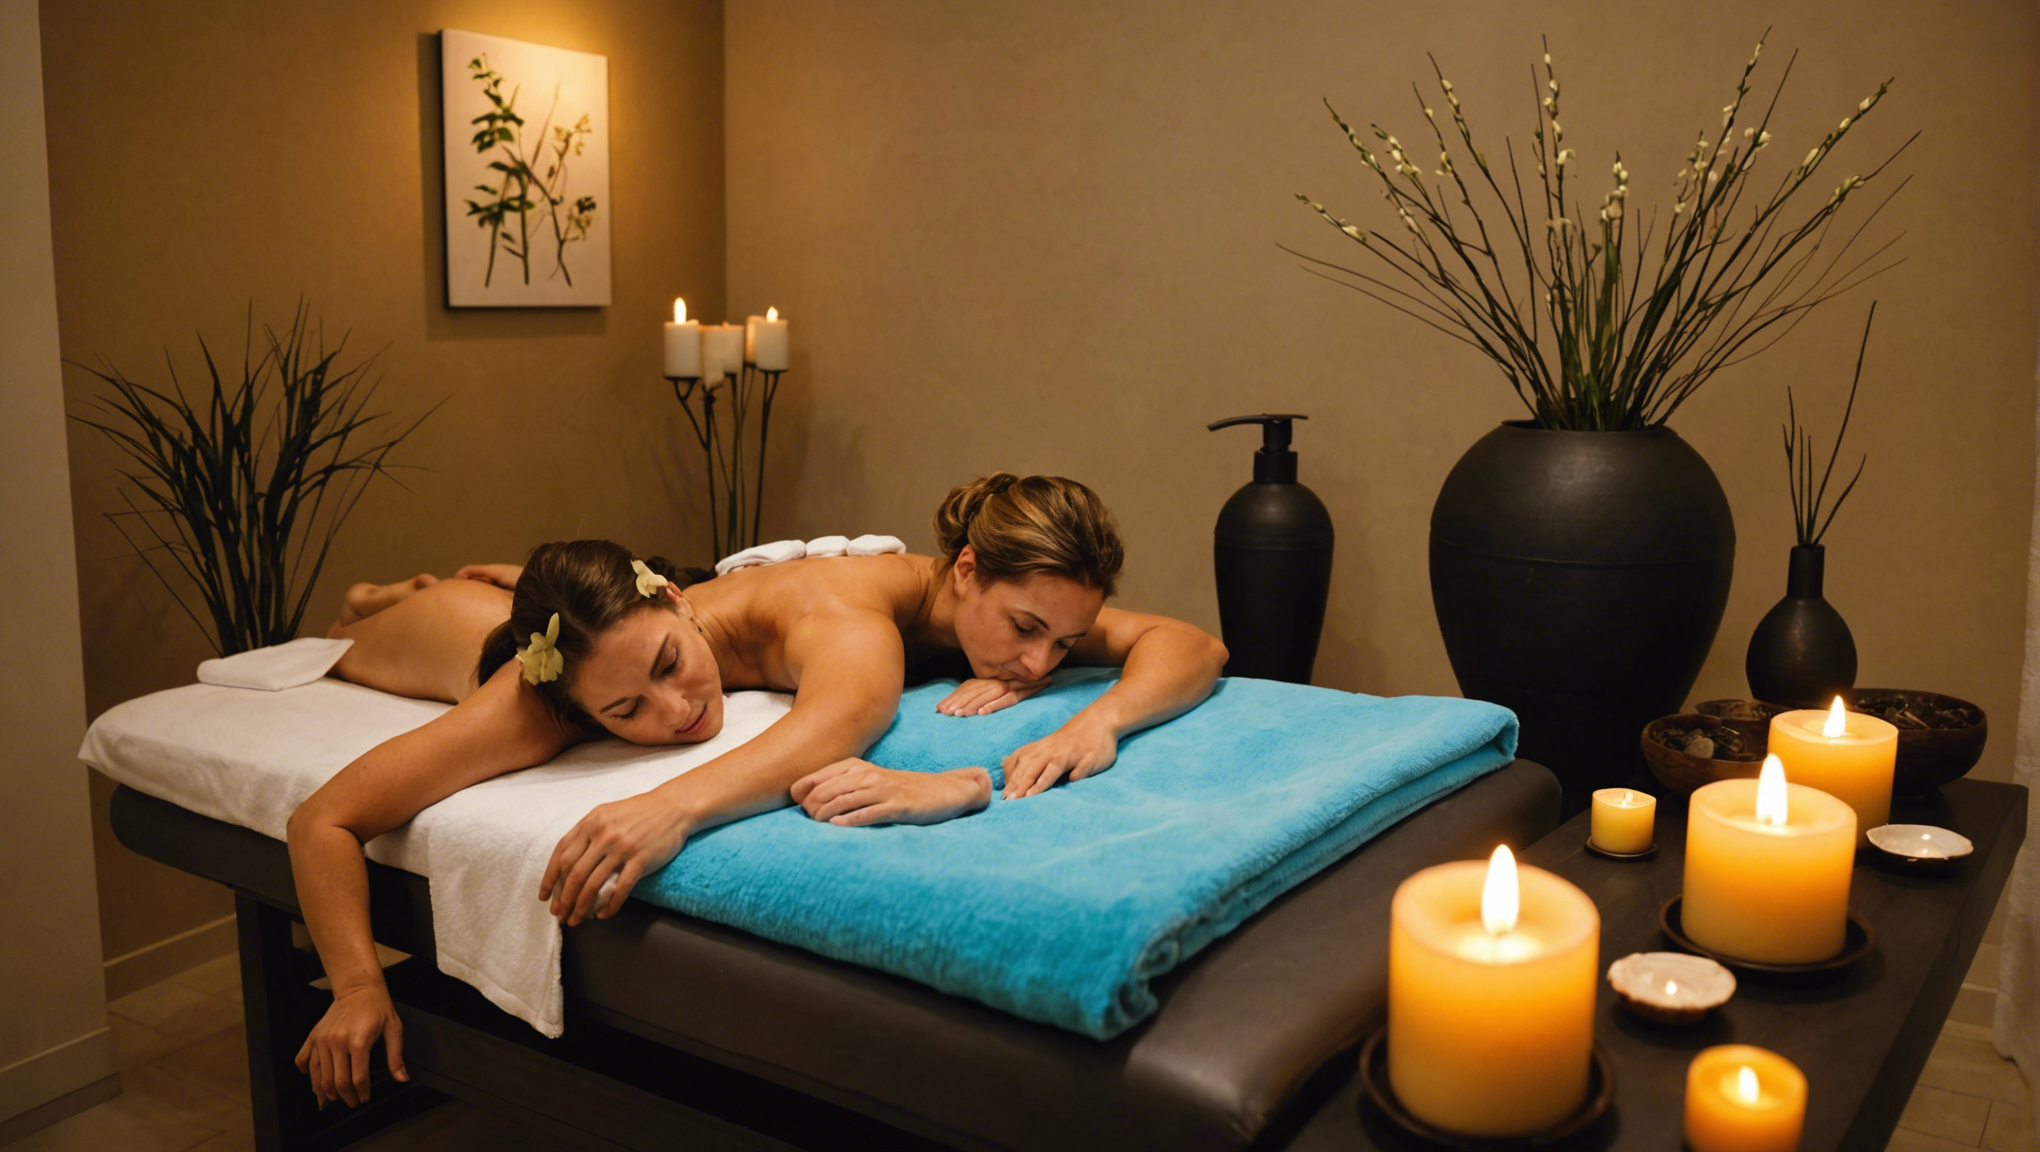 découvrez les bienfaits du massage spa à reims et offrez-vous une parenthèse de détente et de relaxation dans un cadre apaisant. profitez d'un moment de bien-être pour vous ressourcer et prendre soin de vous.